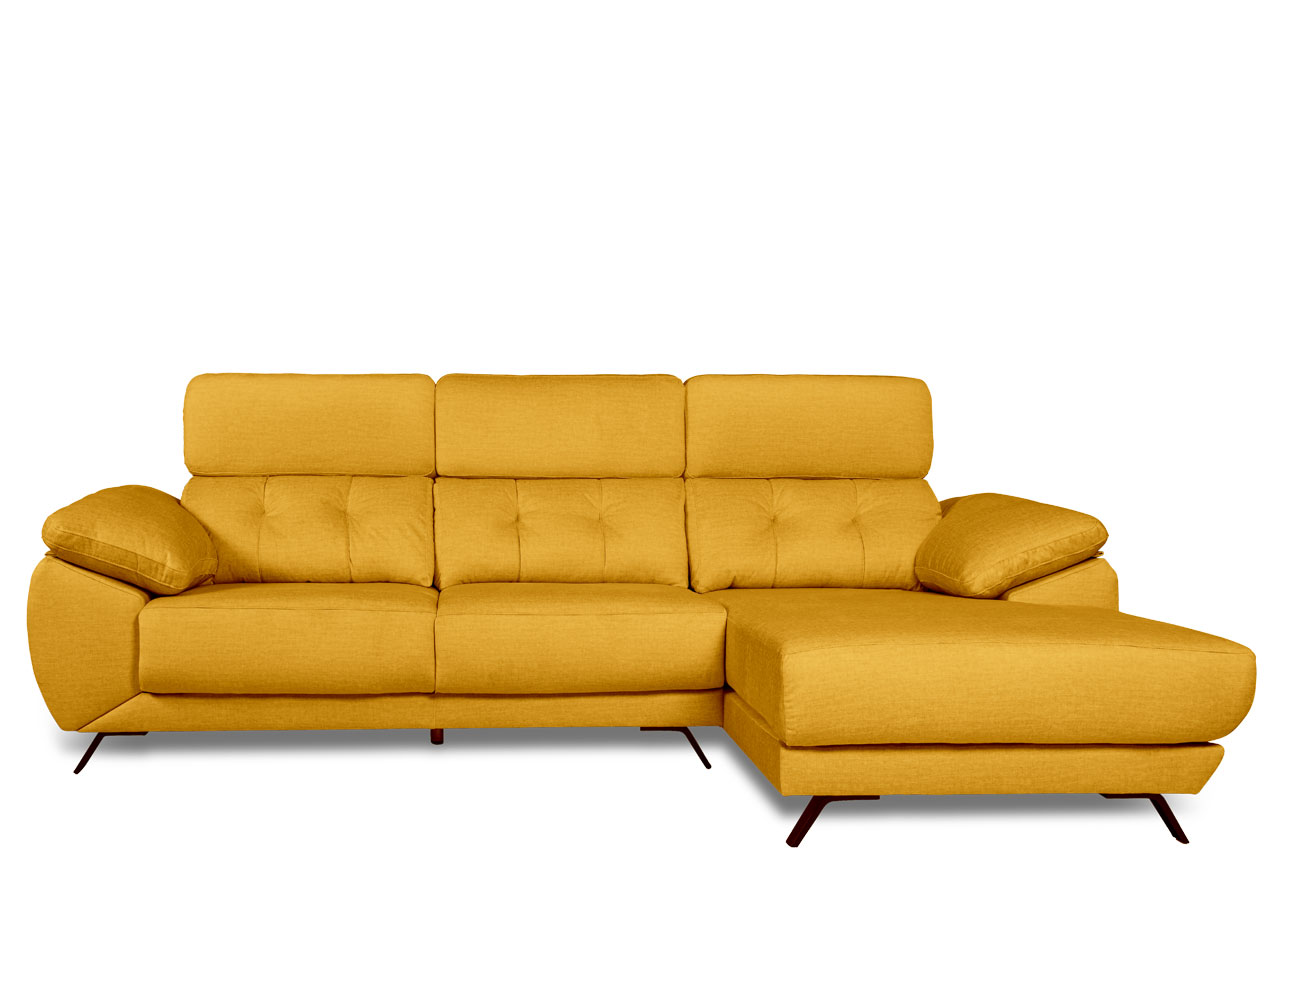 Almacenamiento de sofás - Limpiar, proteger y almacenar - Renta Espacio